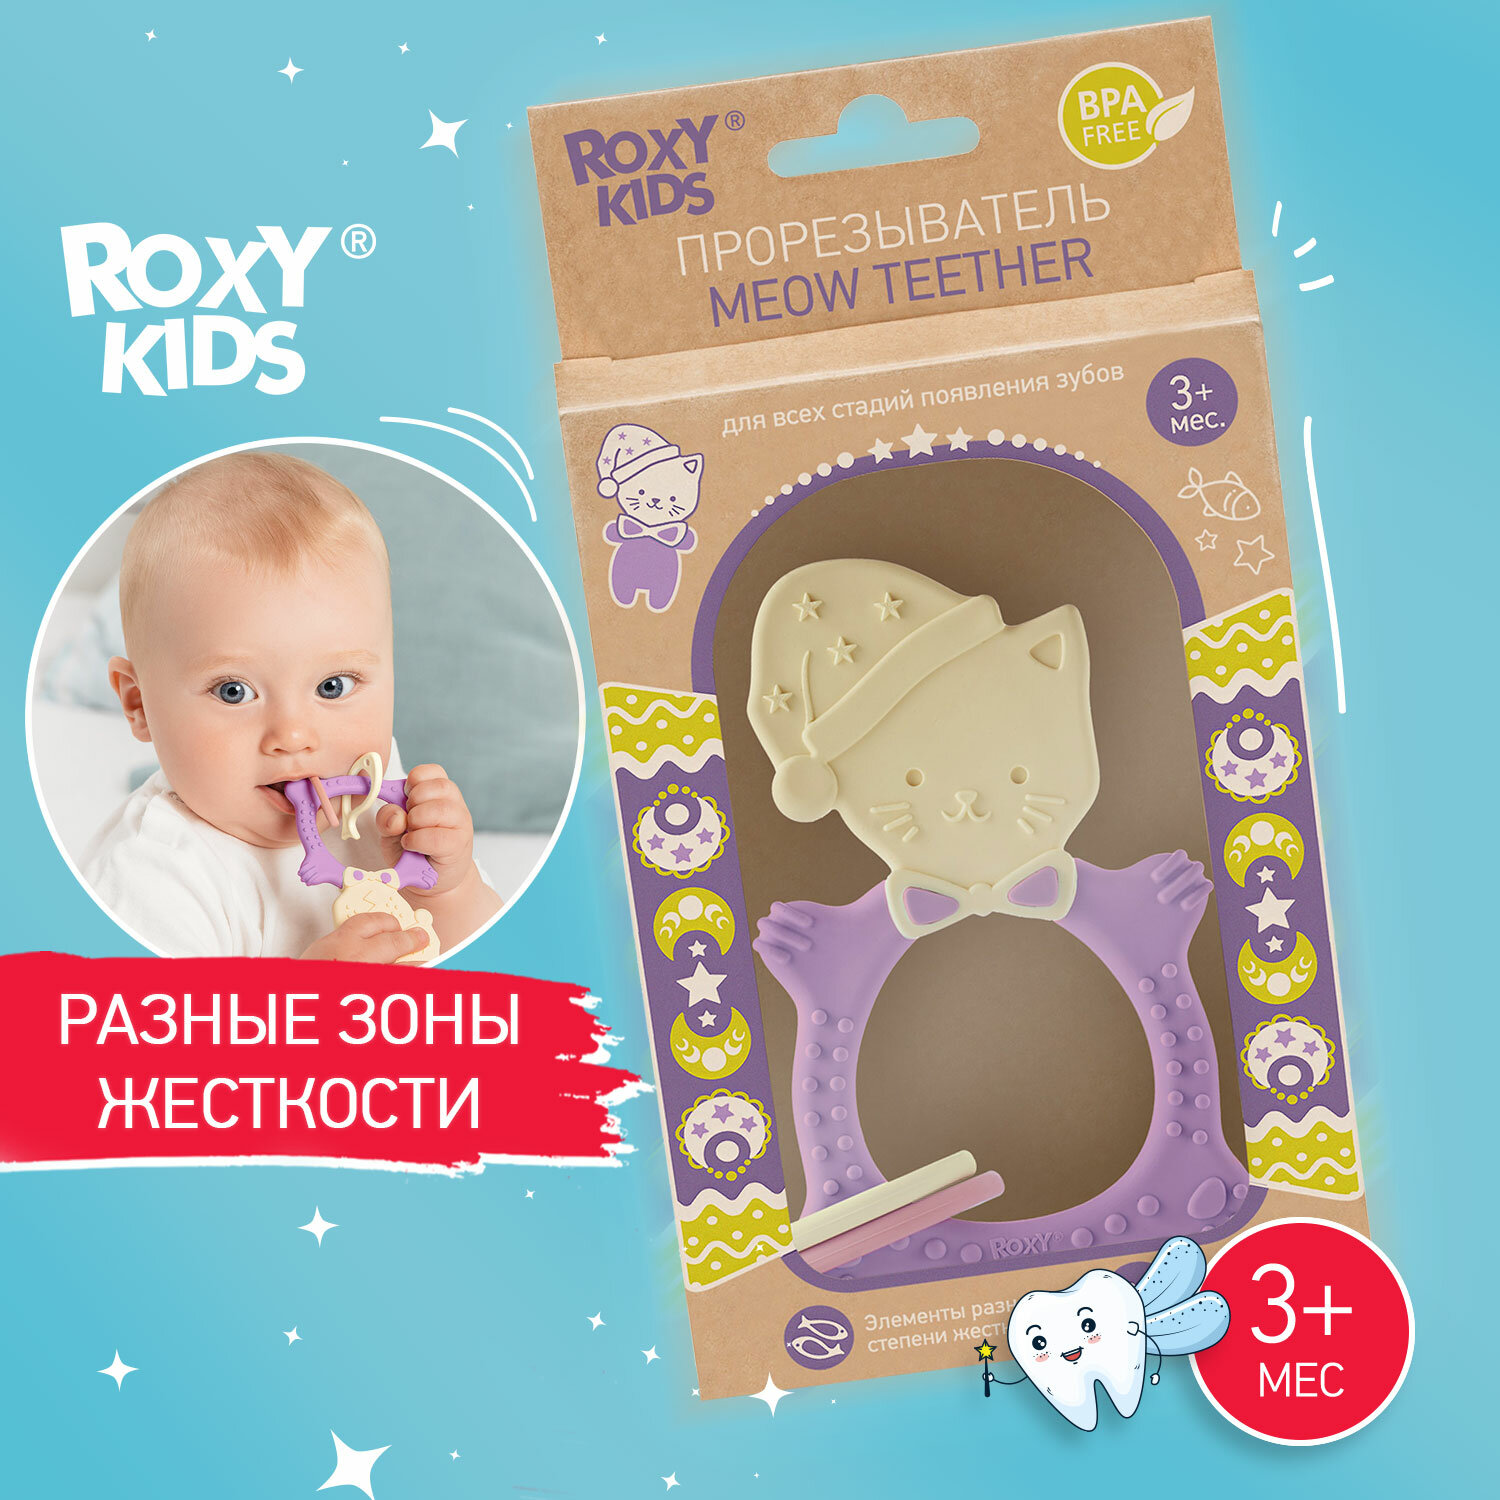 Прорезыватель универсальный для малышей MEOW TEETHER от ROXY-KIDS, цвет сиреневый